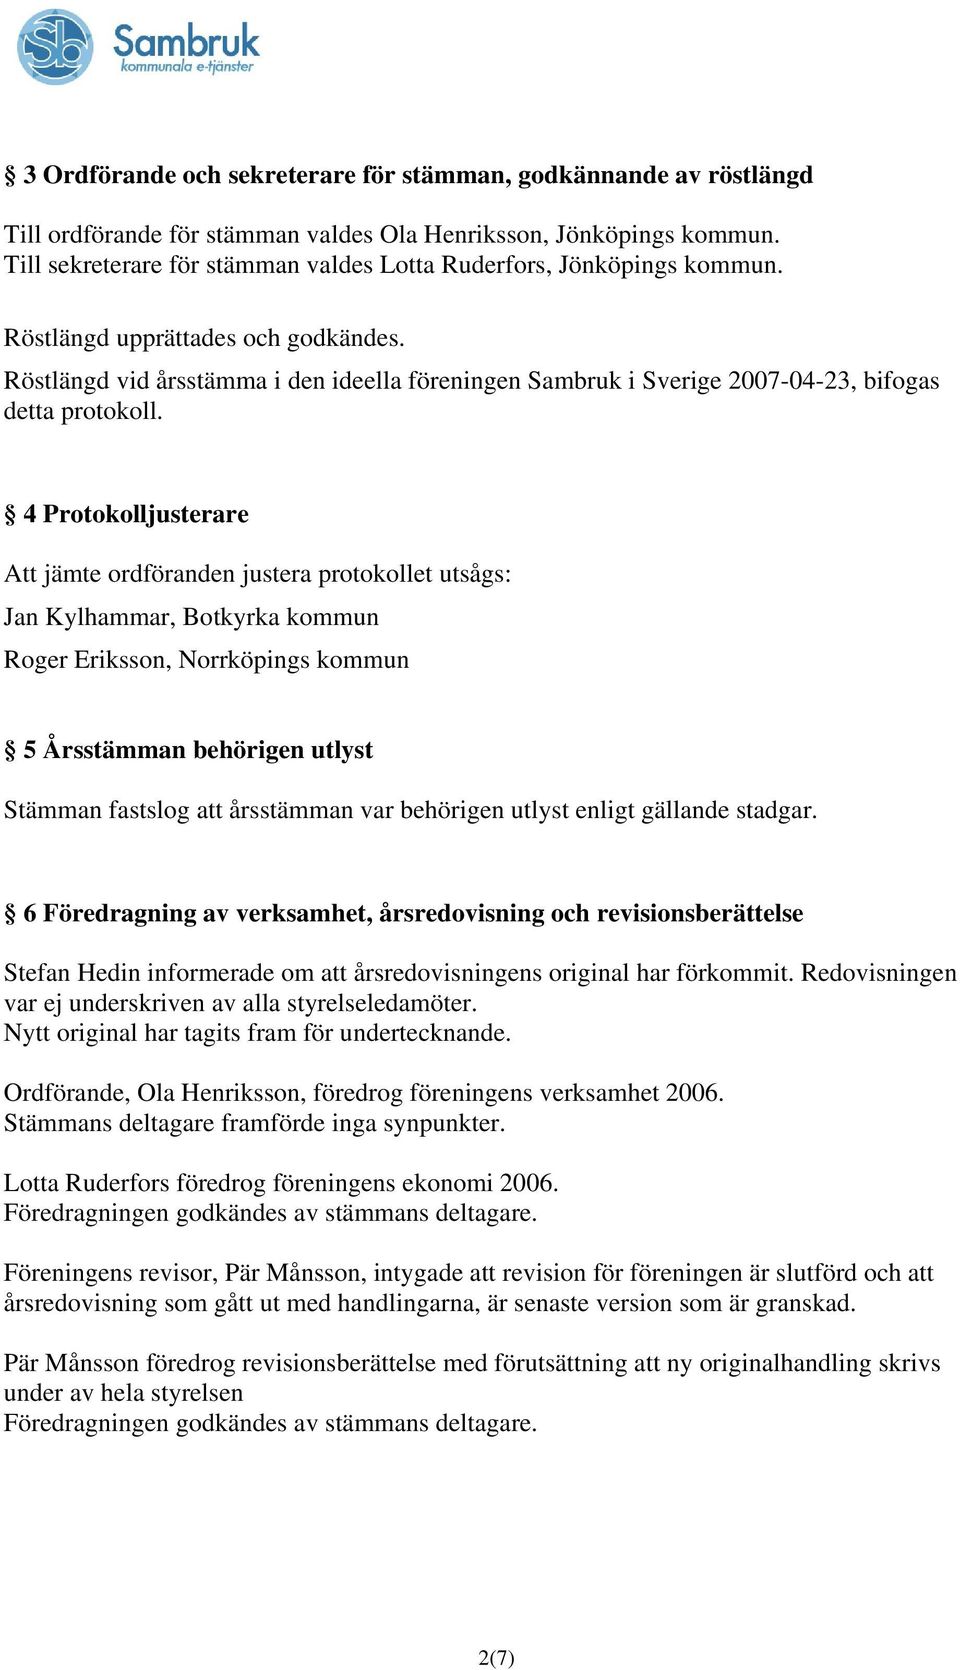 Röstlängd vid årsstämma i den ideella föreningen Sambruk i Sverige 2007-04-23, bifogas detta protokoll.